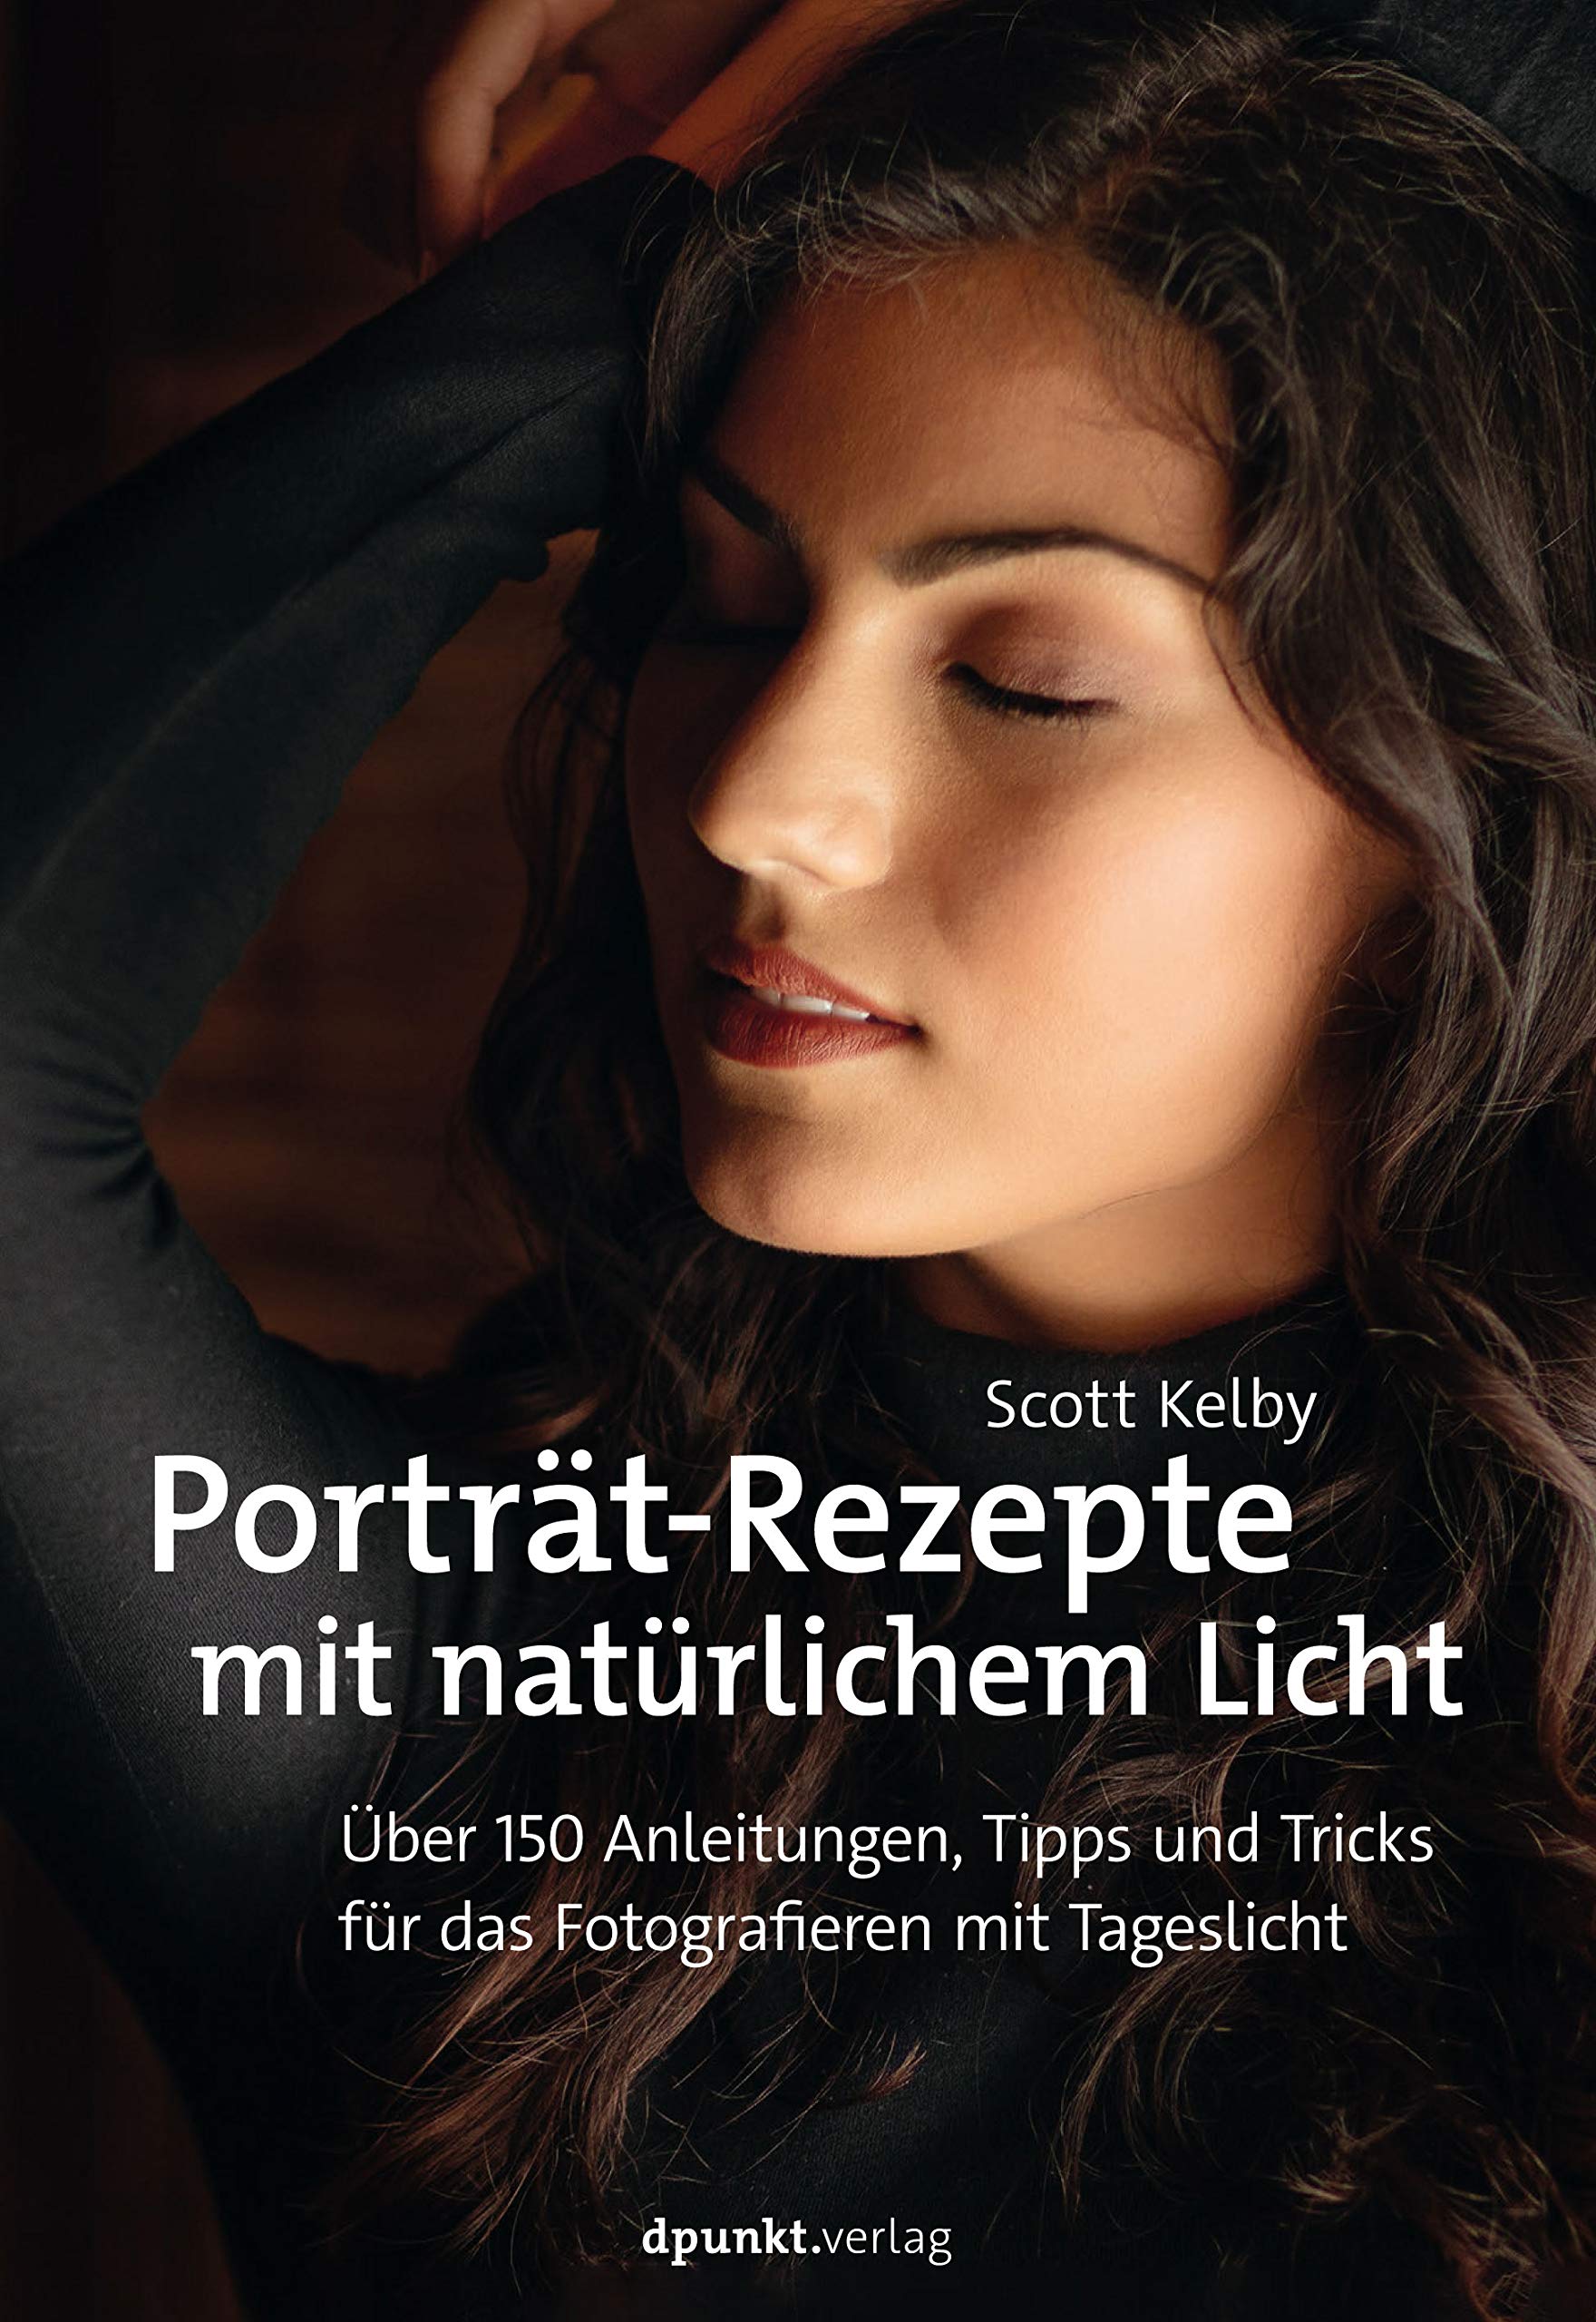 Porträt-Rezepte mit natürlichem Licht. Über 150 Anleitungen, Tipps und Tricks für das Fotografieren mit Tageslicht von Scott Kelby